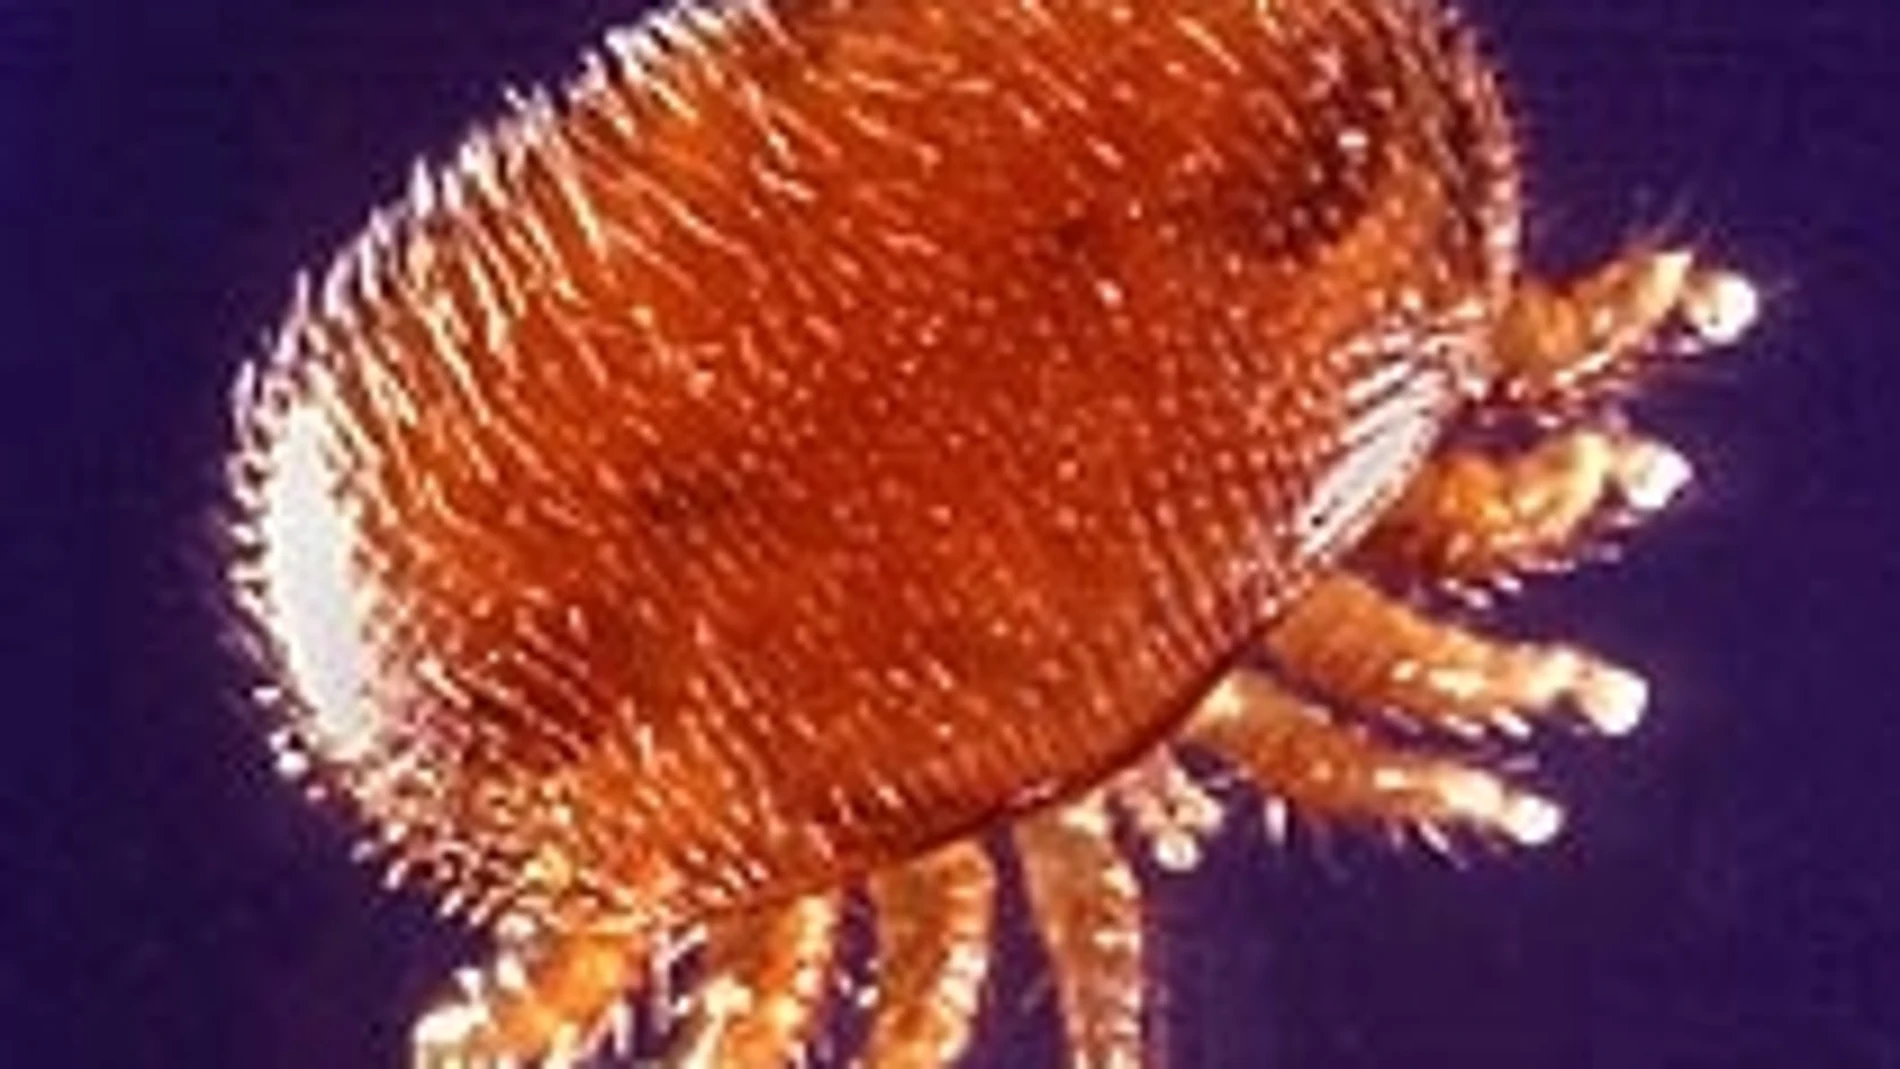 Con solo alrededor de 1,6 mm, el pequeño ácaro Varroa (Varroa destructor) es el mayor enemigo de la abeja